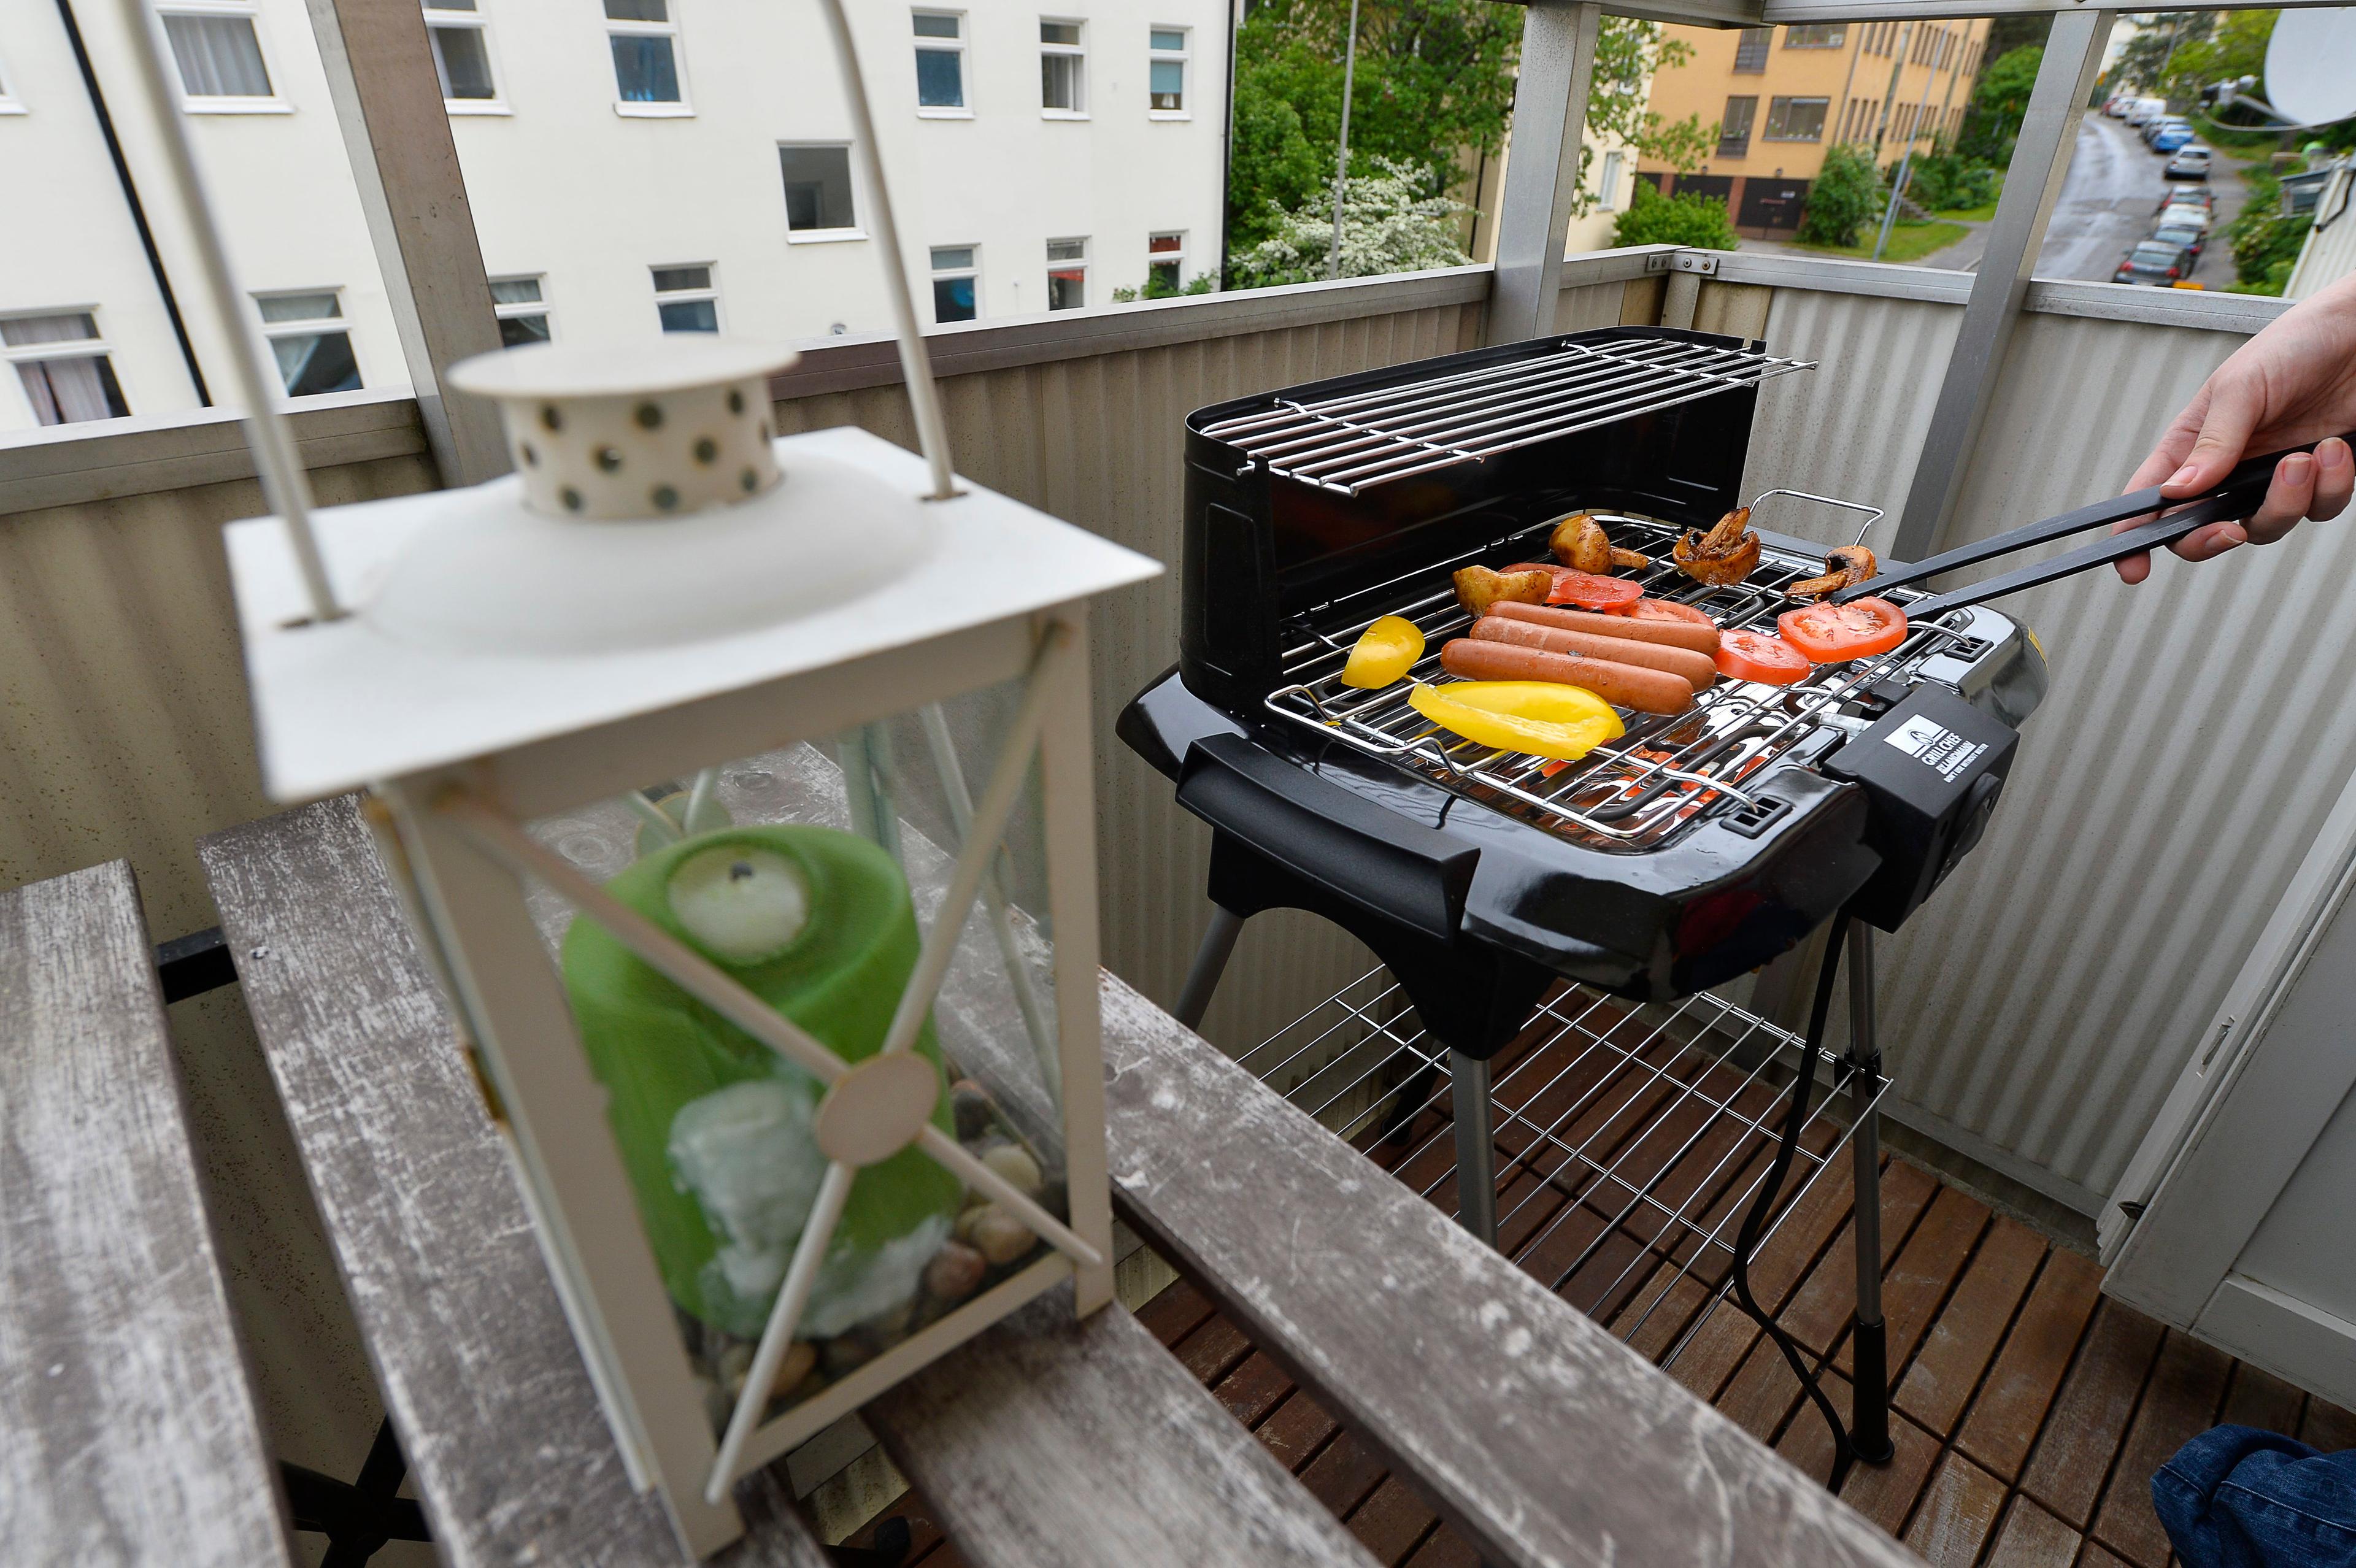 Är det egentligen okej att grilla på balkongen? Arkivbild. Foto: Anders Wiklund/ TT